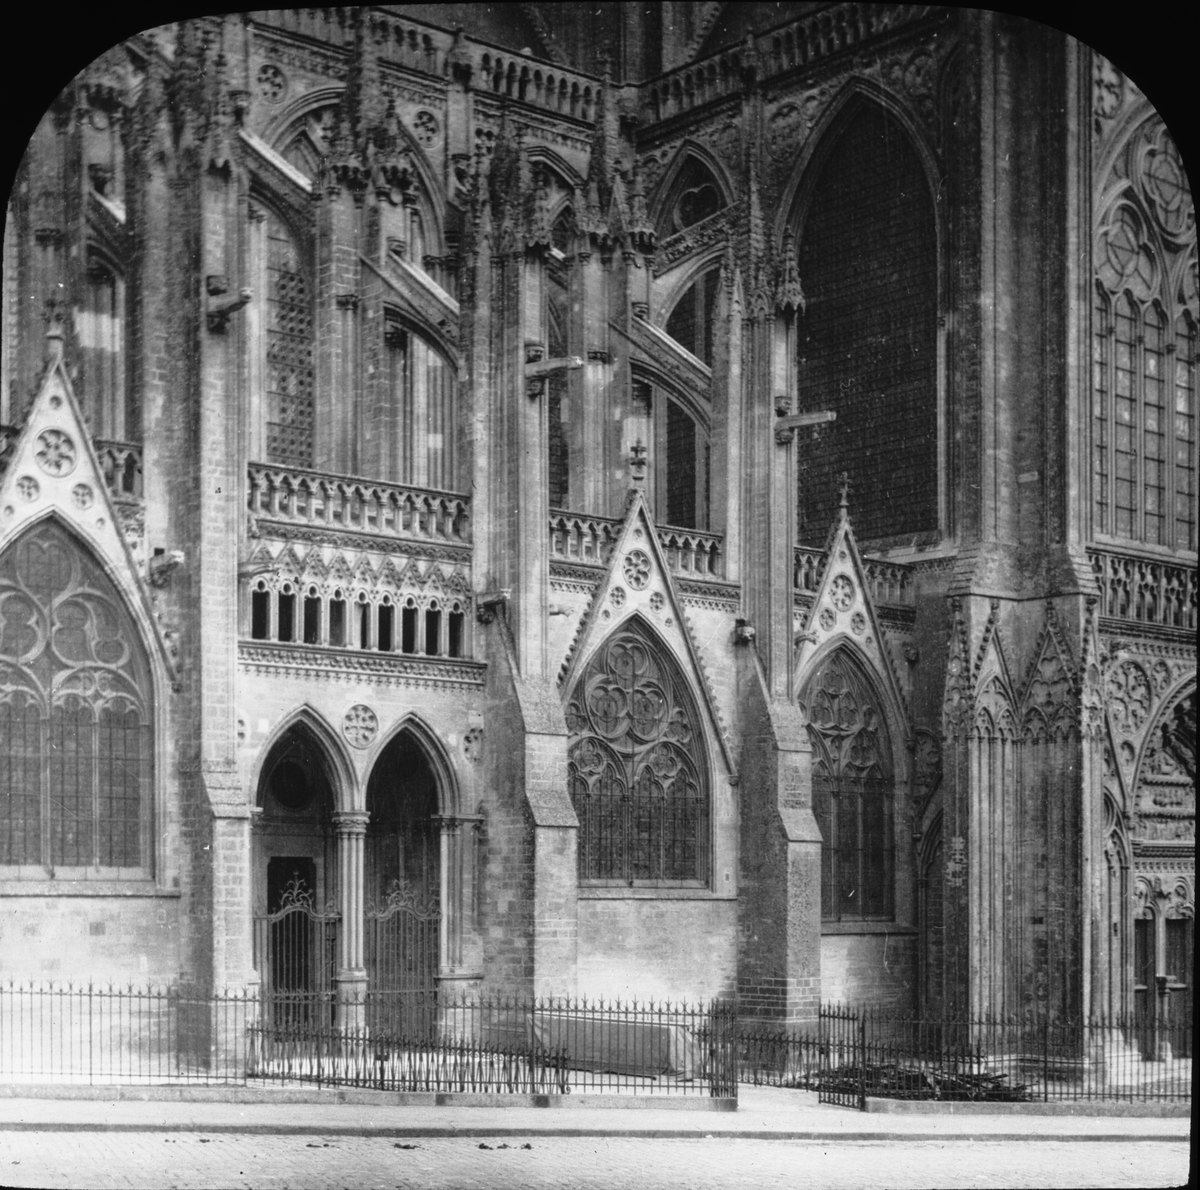 Skioptikonbild med motiv av katedralen i Bayeux, sett från Rue de Nesmond.
Bilden har förvarats i kartong märkt: Resan 1908. Bayeux 8. XI. Text på bild: "Cathedral".